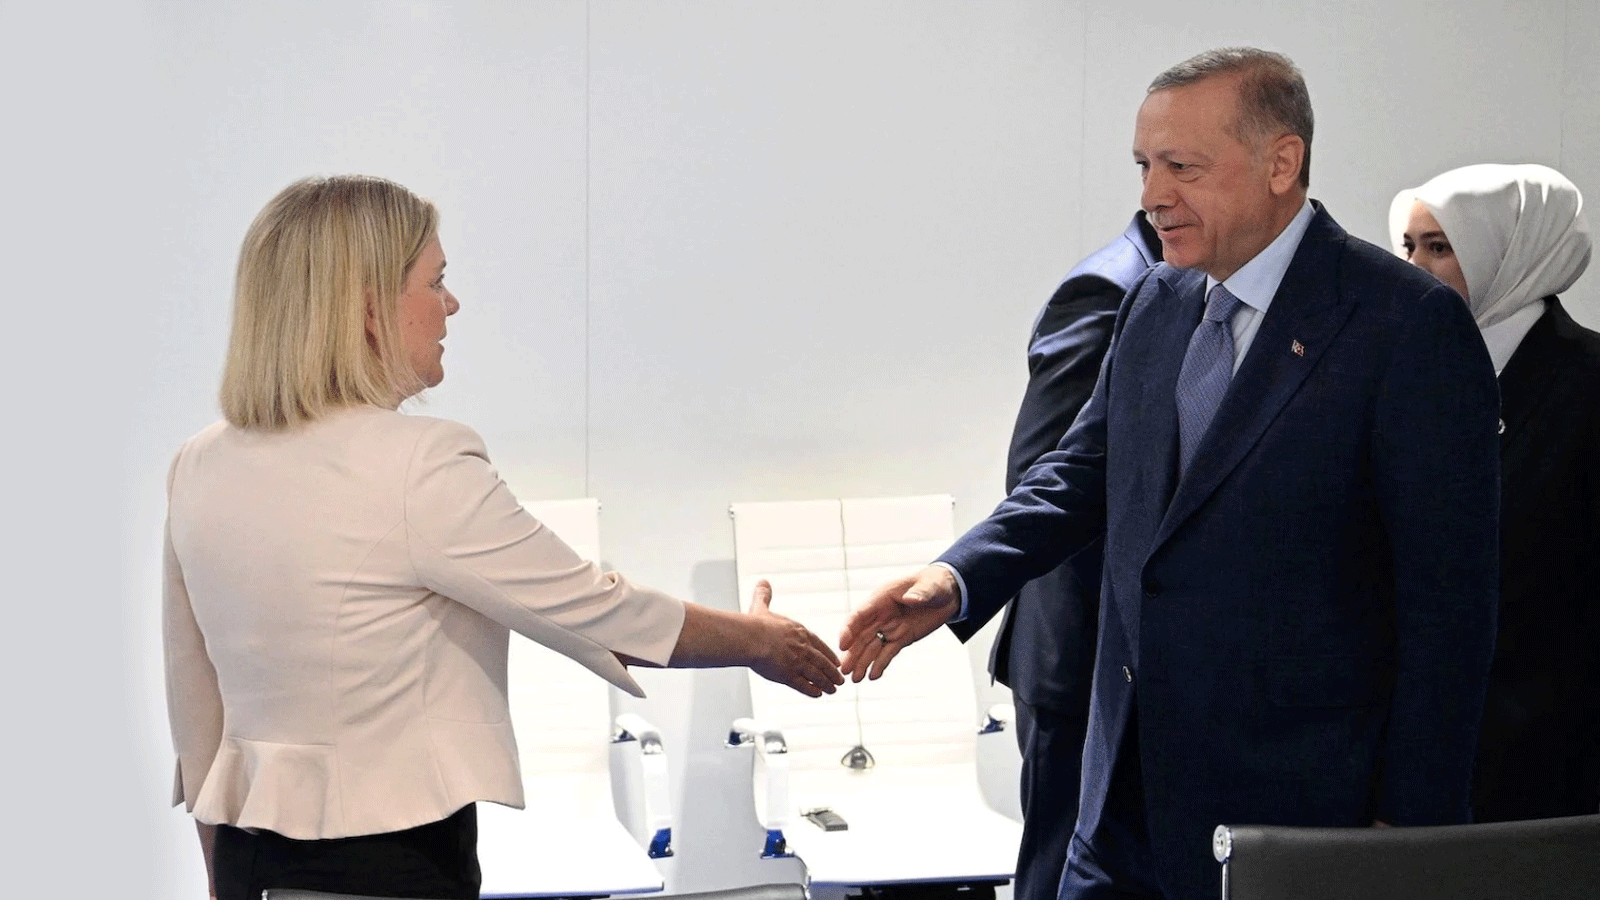 رئيسة الوزراء السويدية ماغدالينا أندرسون تصافح الرئيس التركي رجب طيب إردوغان خلال اجتماع على هامش قمة الناتو في مدريد في 28 حزيران\يونيو 2022